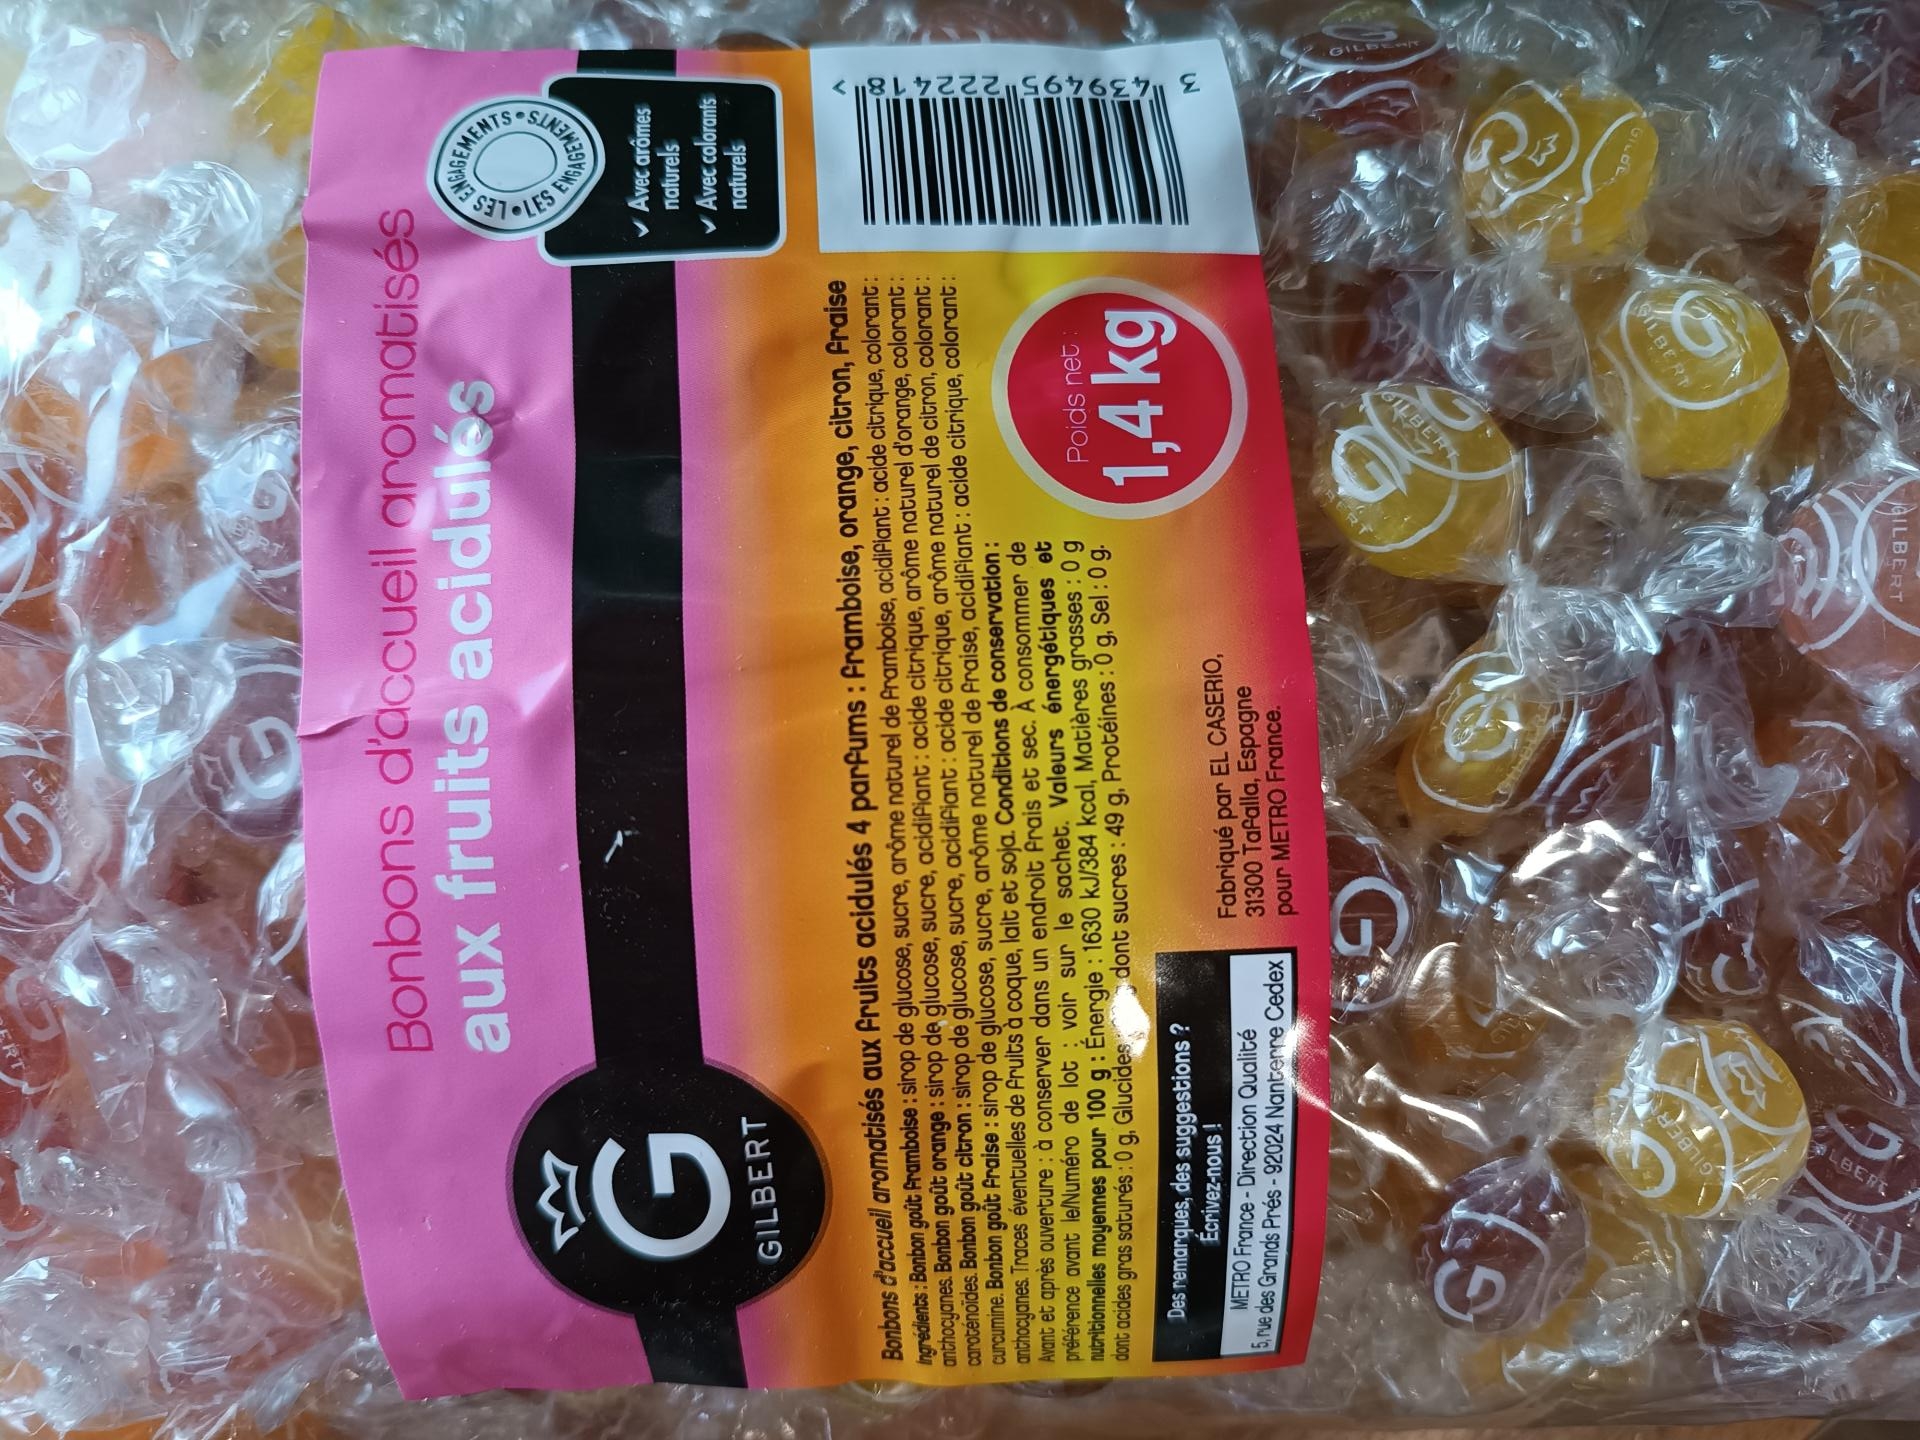 Bonbons d accueil aux fruits acidules gilbert 1 4 kg